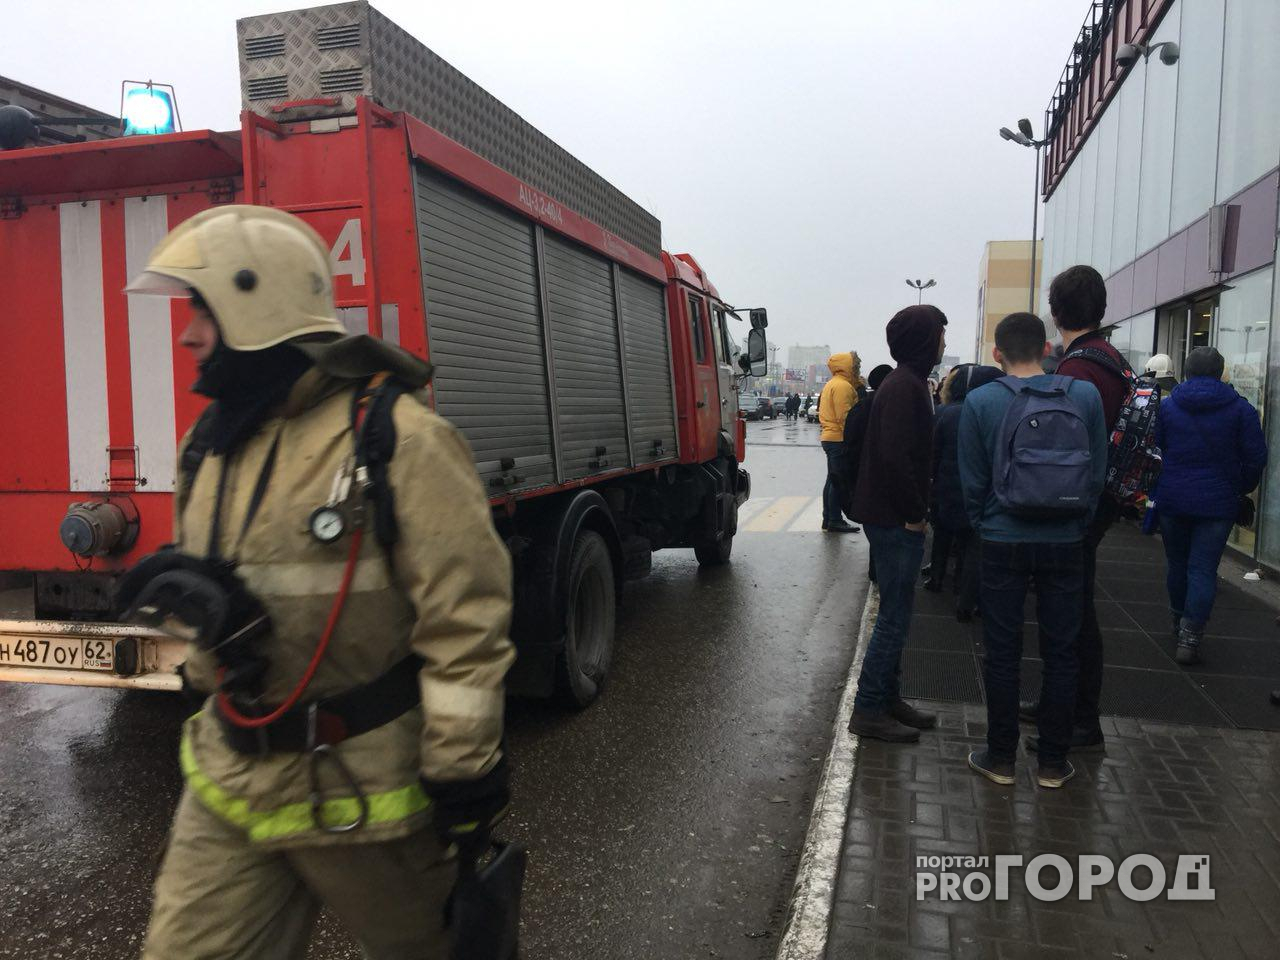 В ТРЦ "Премьер" проведена эвакуация из-за сработавшей сигнализации